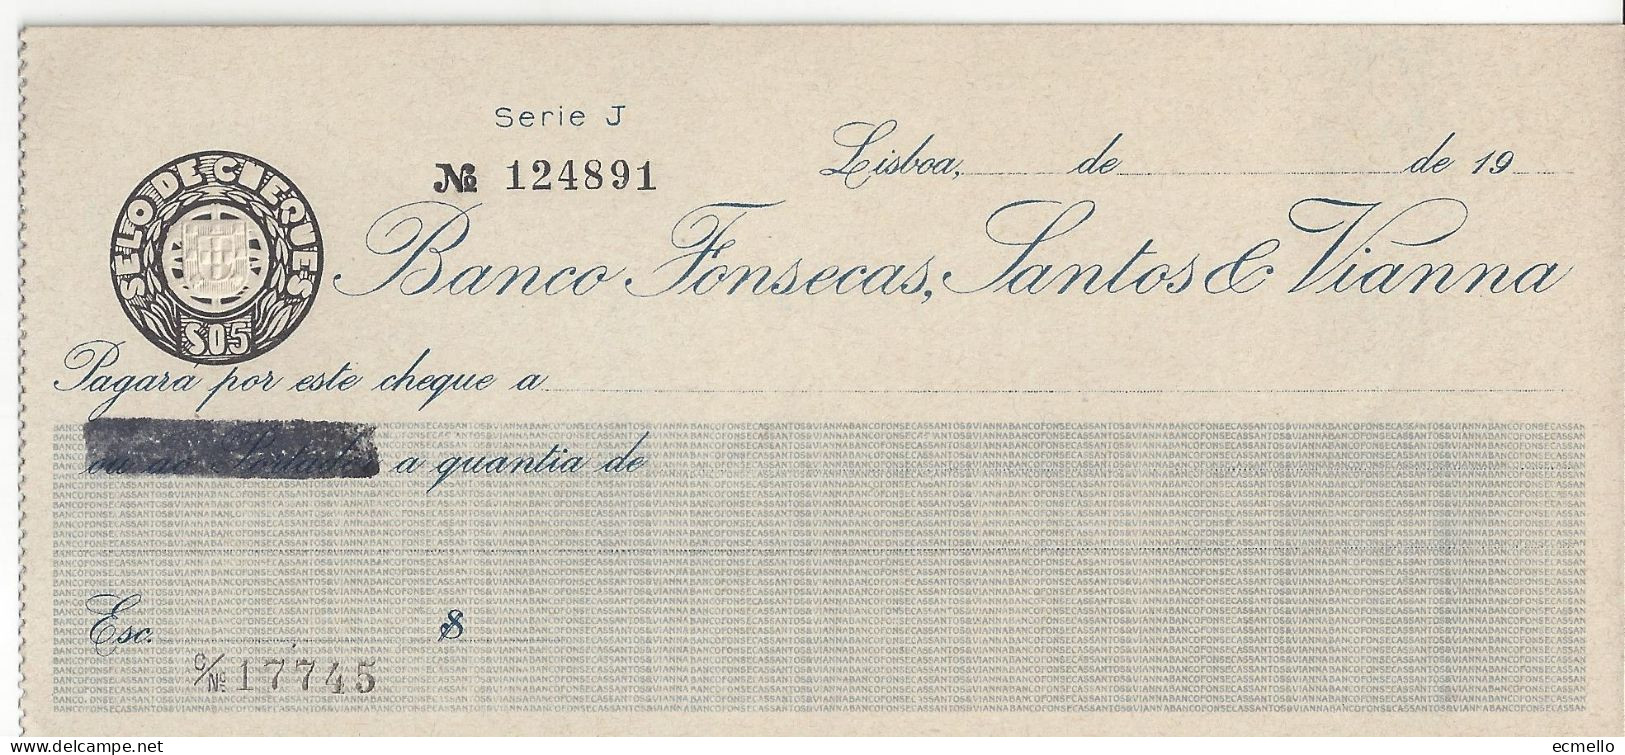 PORTUGAL CHEQUE CHECK BANCO FONSECAS, SANTOS & VIANNA, 1950'S. - Chèques & Chèques De Voyage